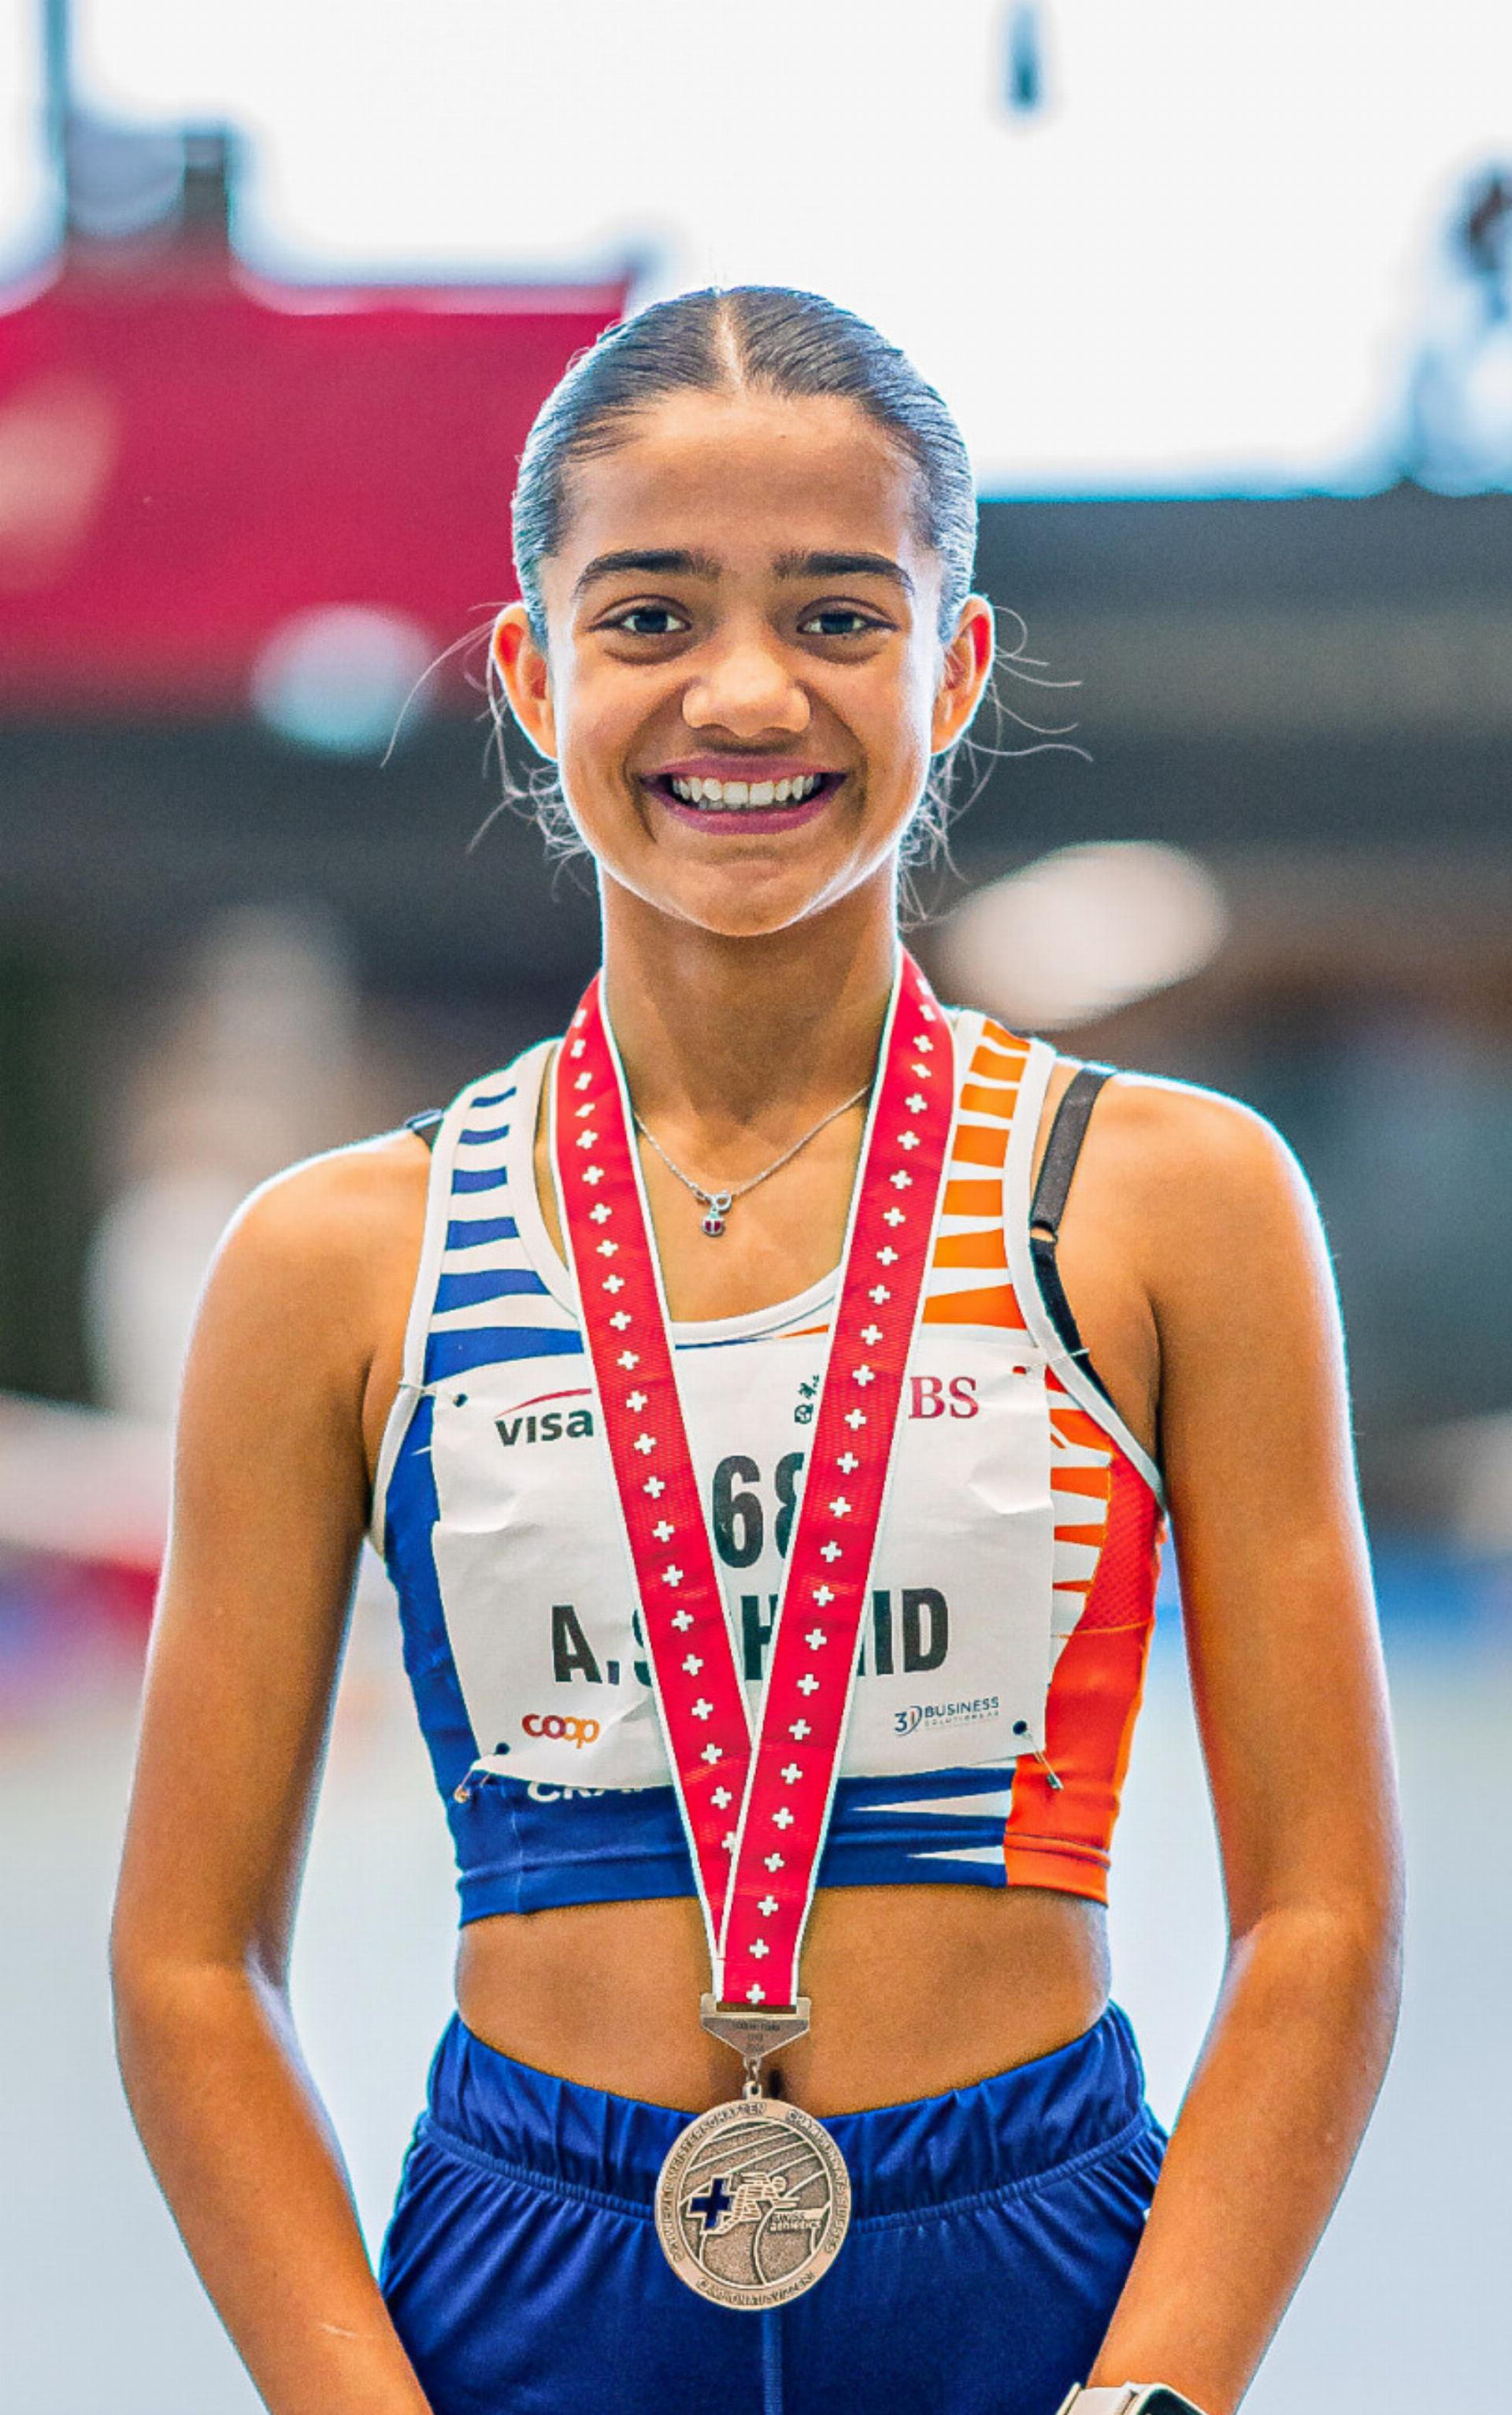 Die 14-jährige Hölsteinerin Anina Schmid gehört über die Mittelstrecken zur nationalen Spitze in der U16. Bilder zvg